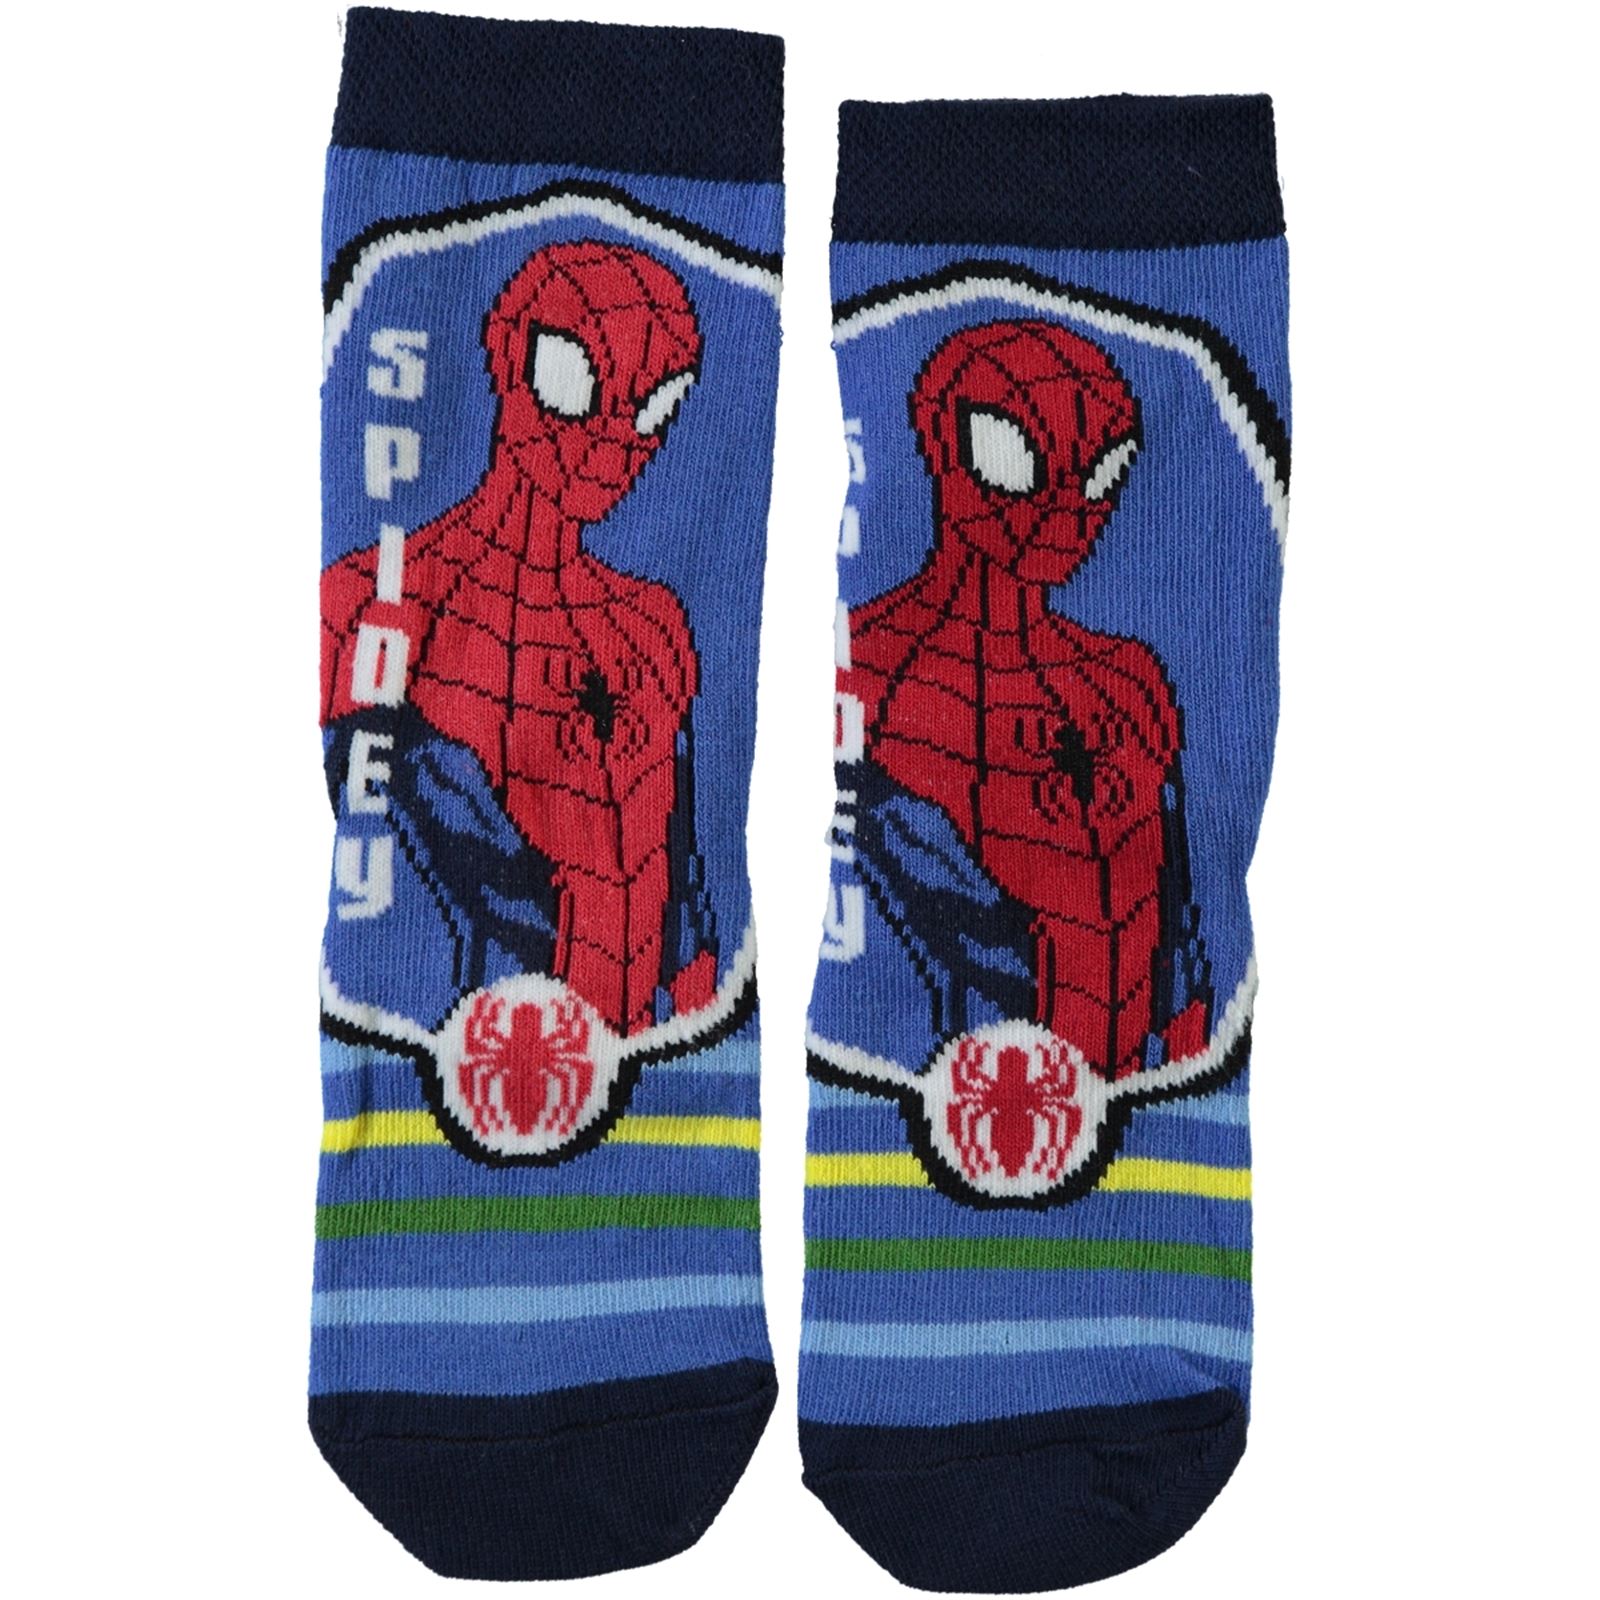 Çimpa Spiderman Erkek Çocuk Çorap 3-9 Yaş Saks Mavisi